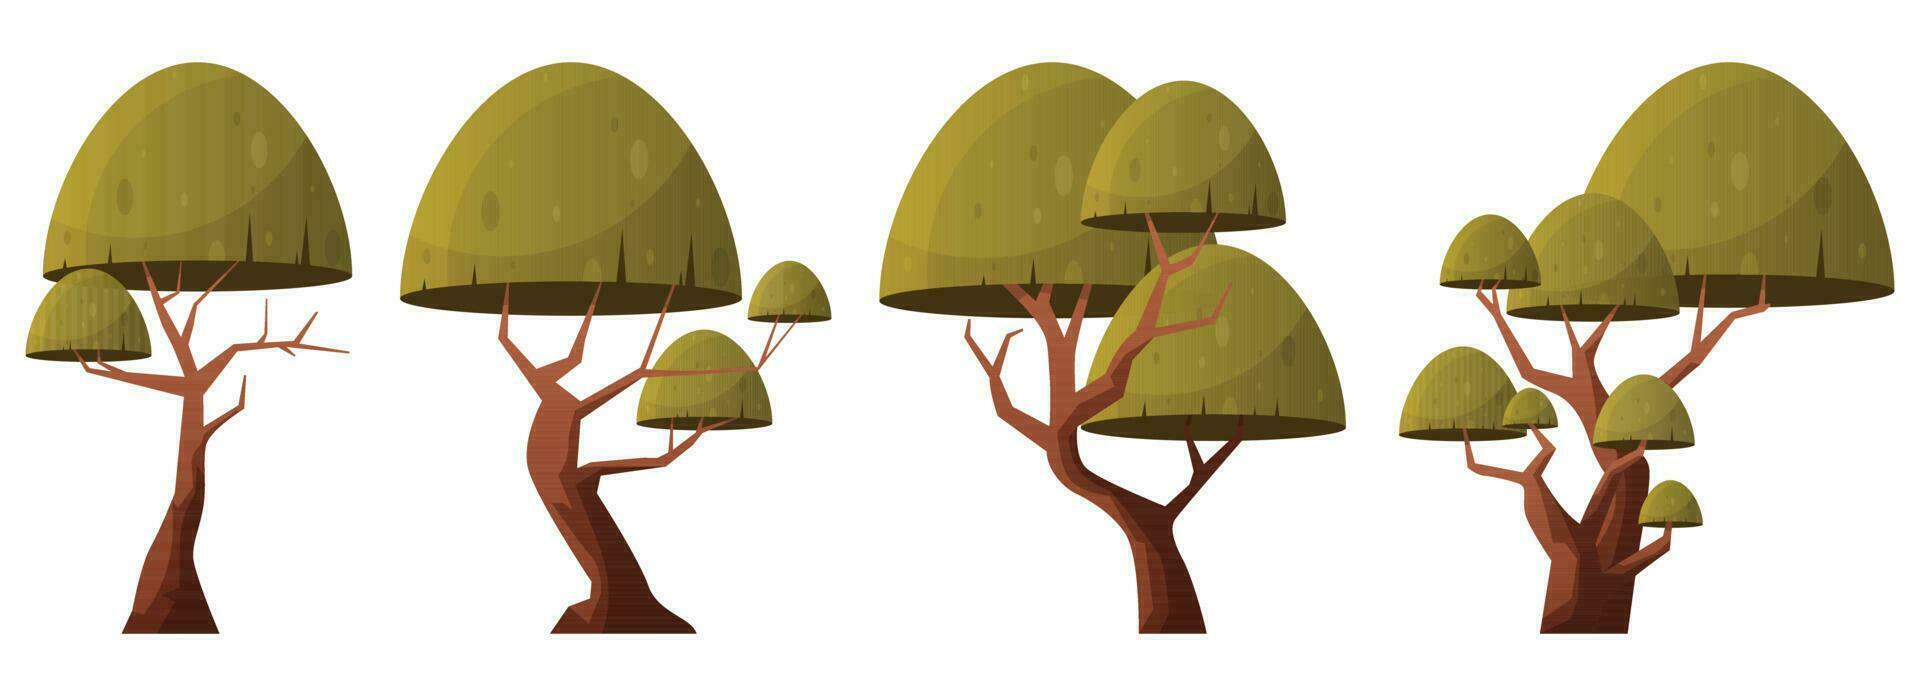 vistoso dibujos animados árbol colección aislado en blanco. bosque arboles vector ilustración